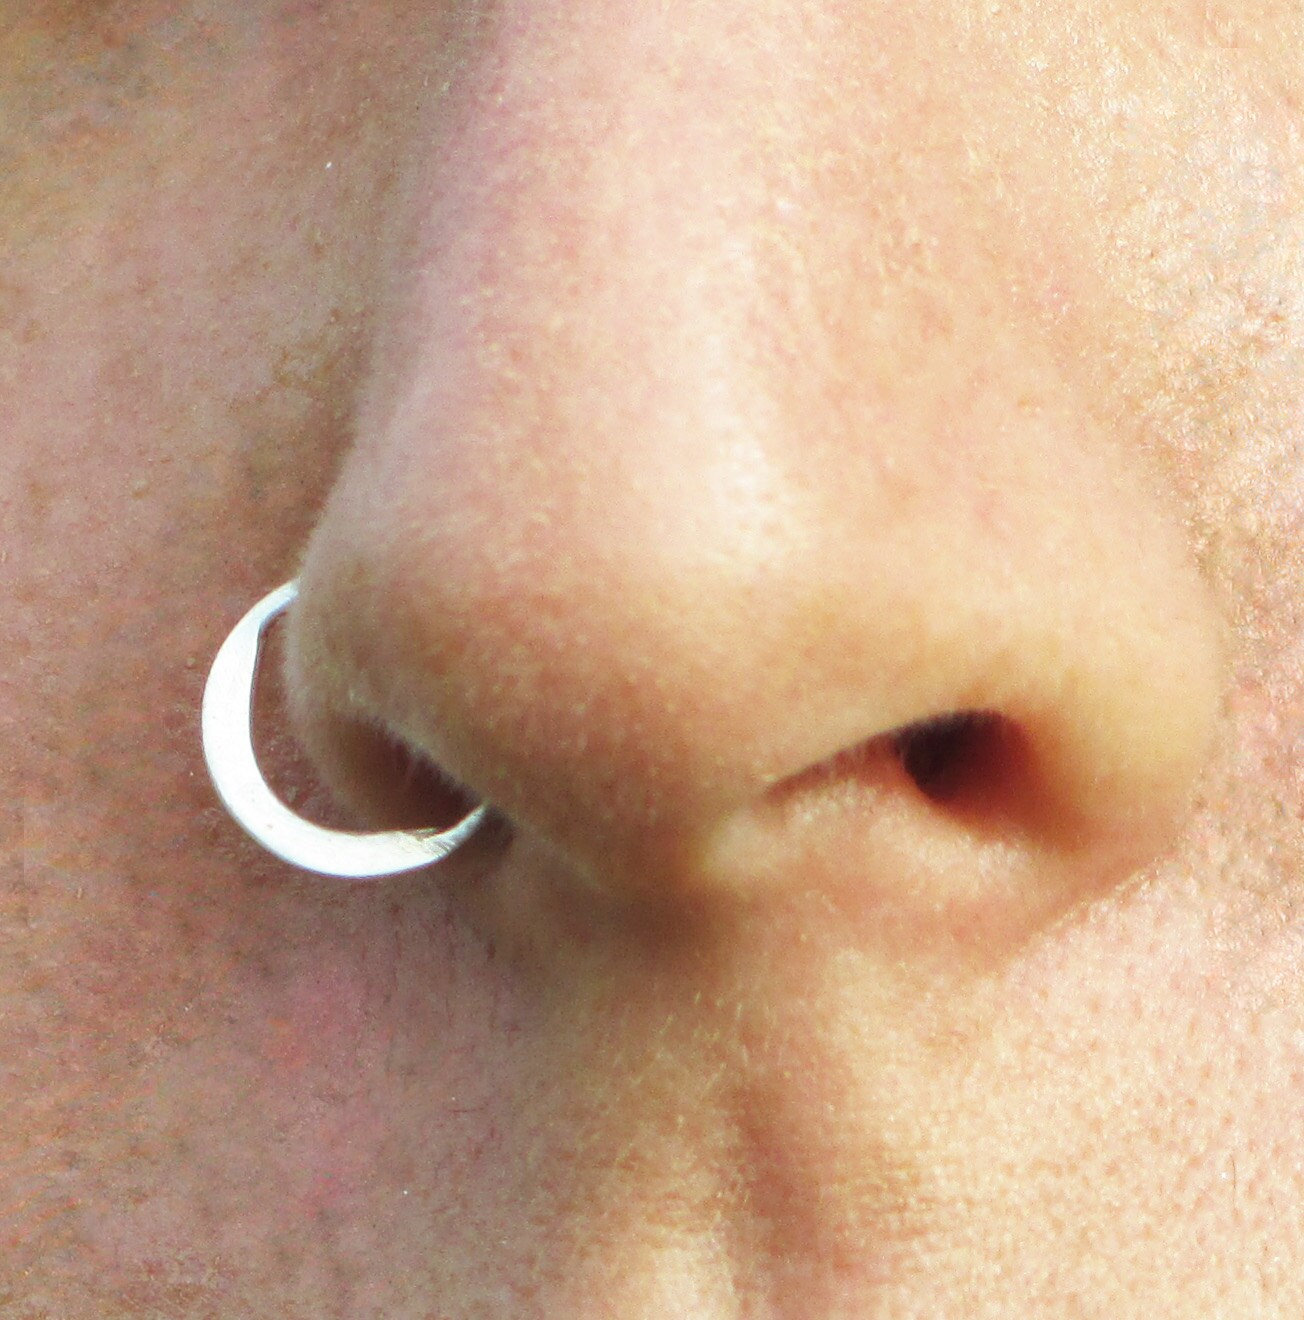 Gold Nose Ring, Aztec Nose Ring, Indian Nose Ring, Nose Ring, Septum Ring,  14 K Gold Nose Ring, Nostril Ring, Tribal Nose Hoop, Burning Man - Etsy